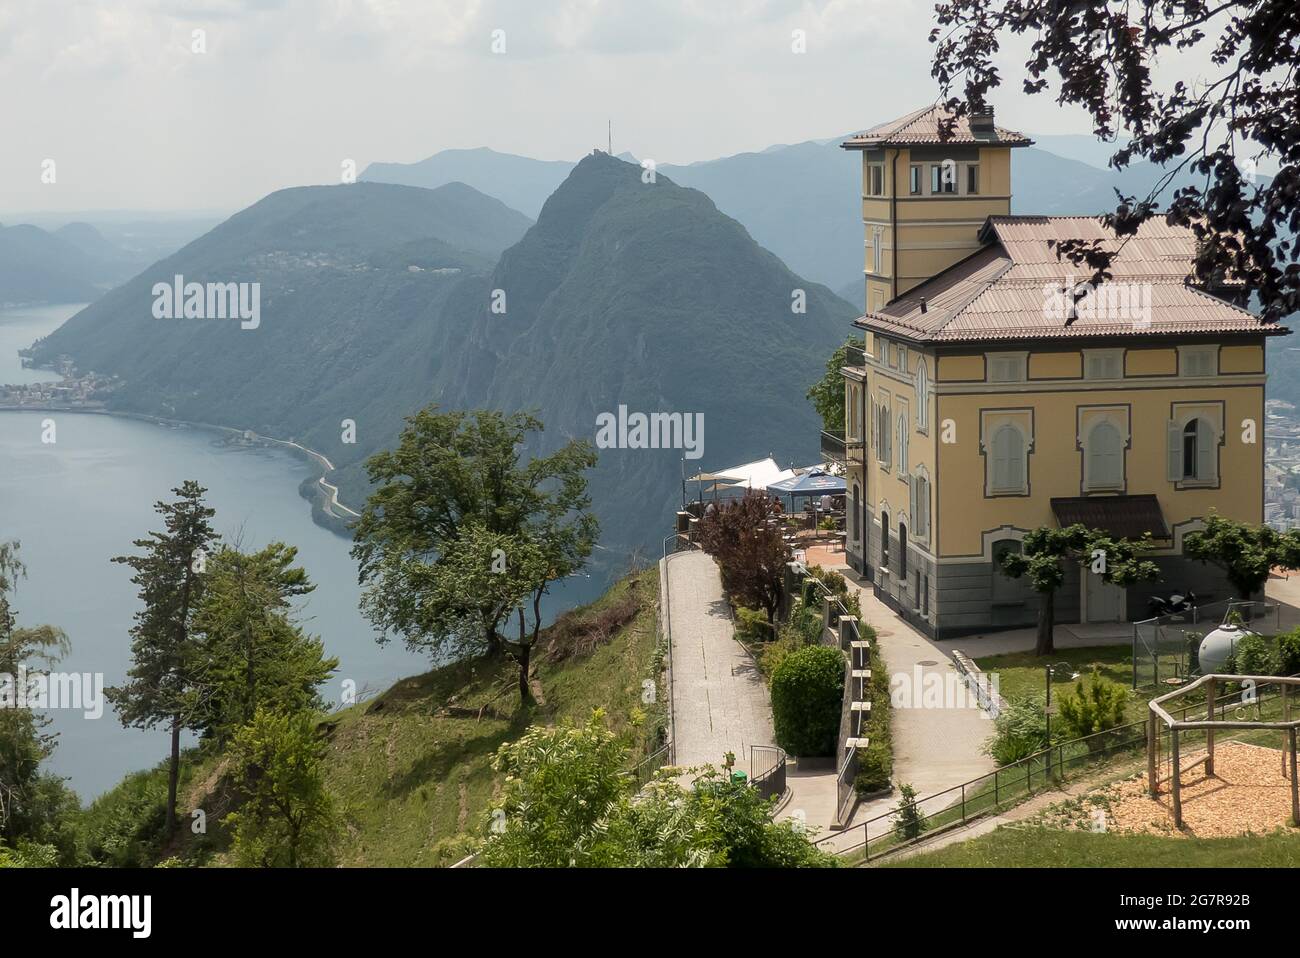 Lugano in Switzerland: the Ristorante Vetta Monte Brè Stock Photo